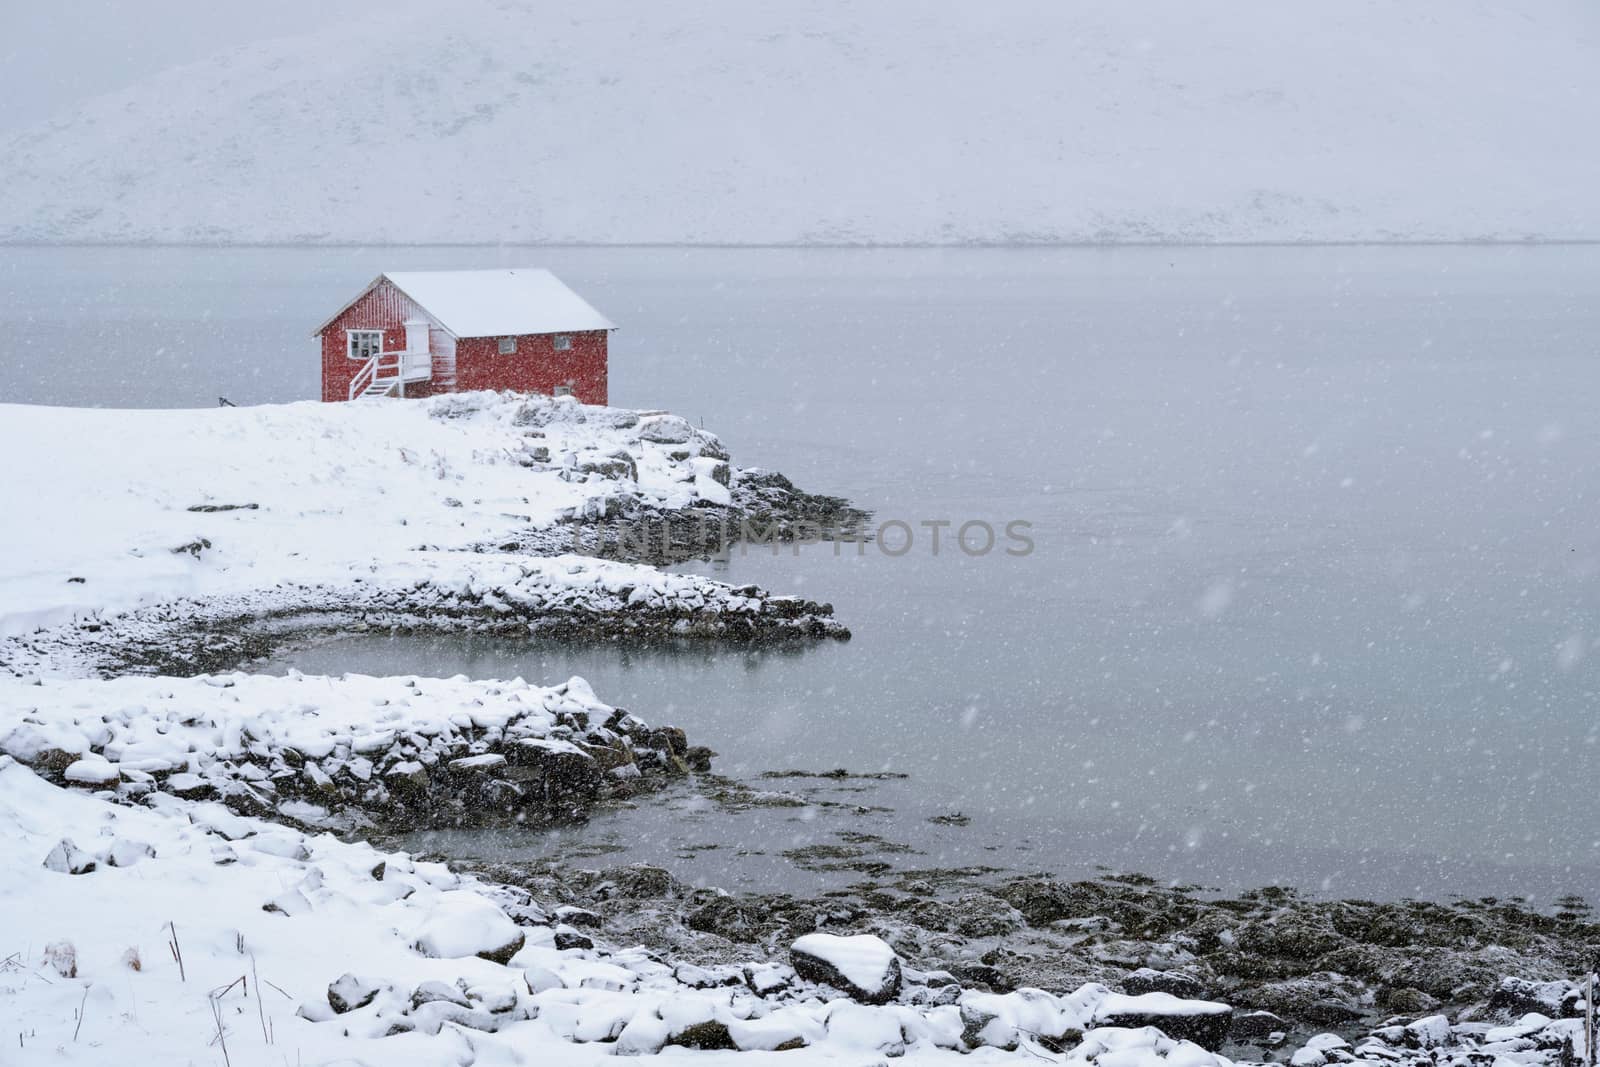 Red rorbu house in winter, Lofoten islands, Norway by dimol